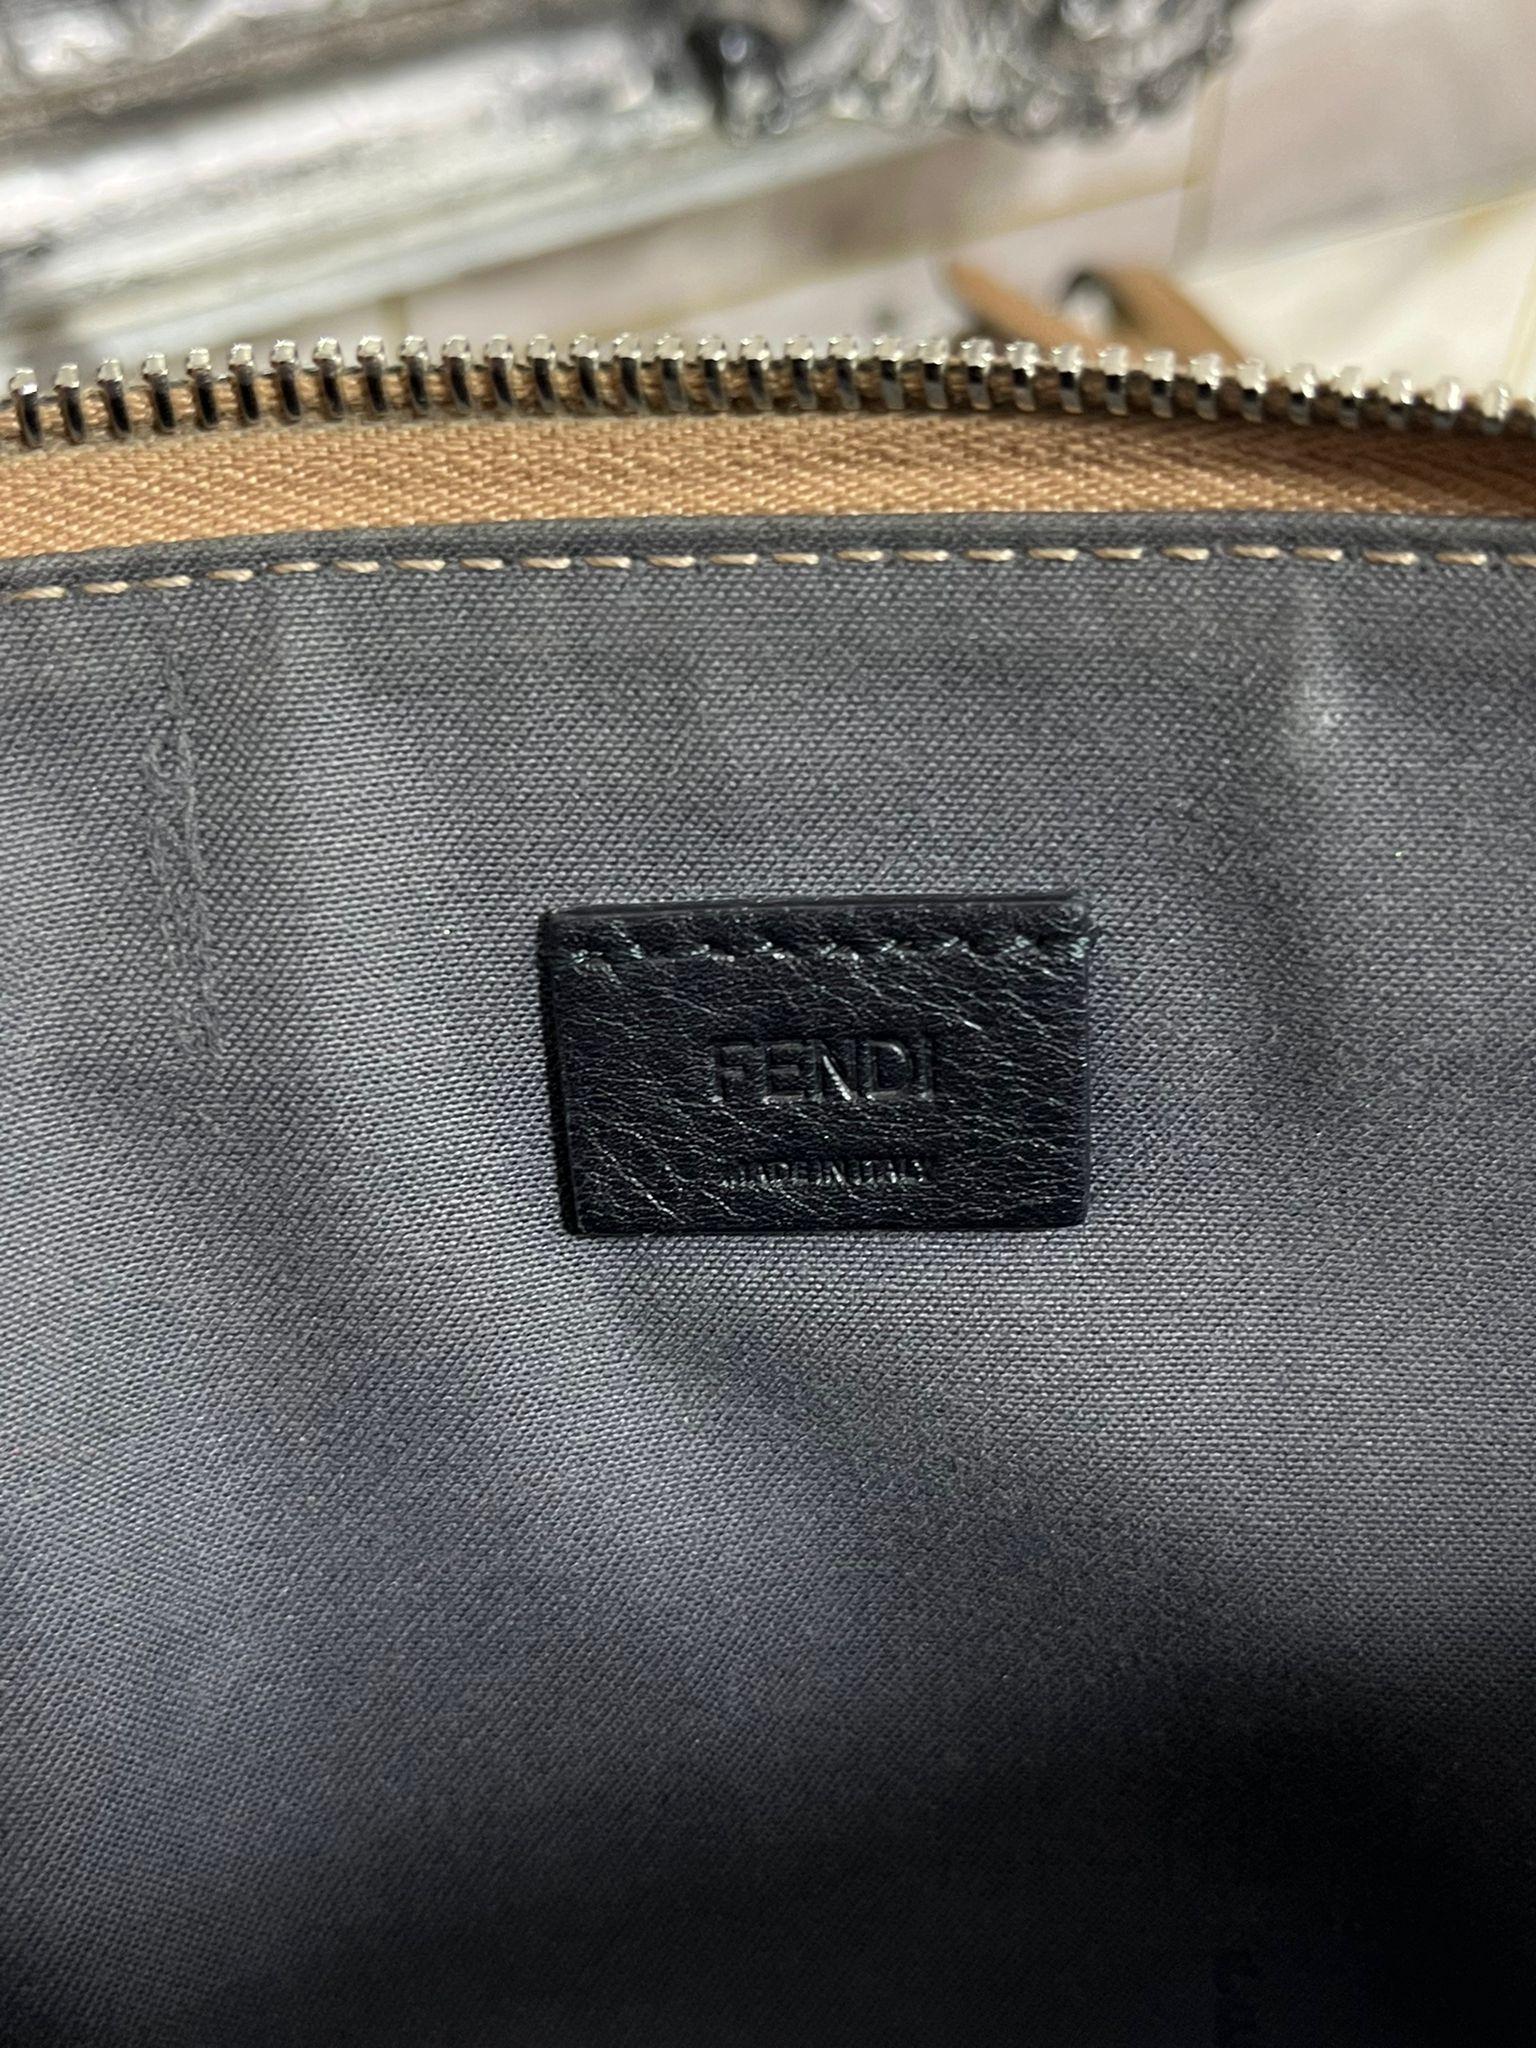 Fendi Rainbow Stud Leather Bag 3